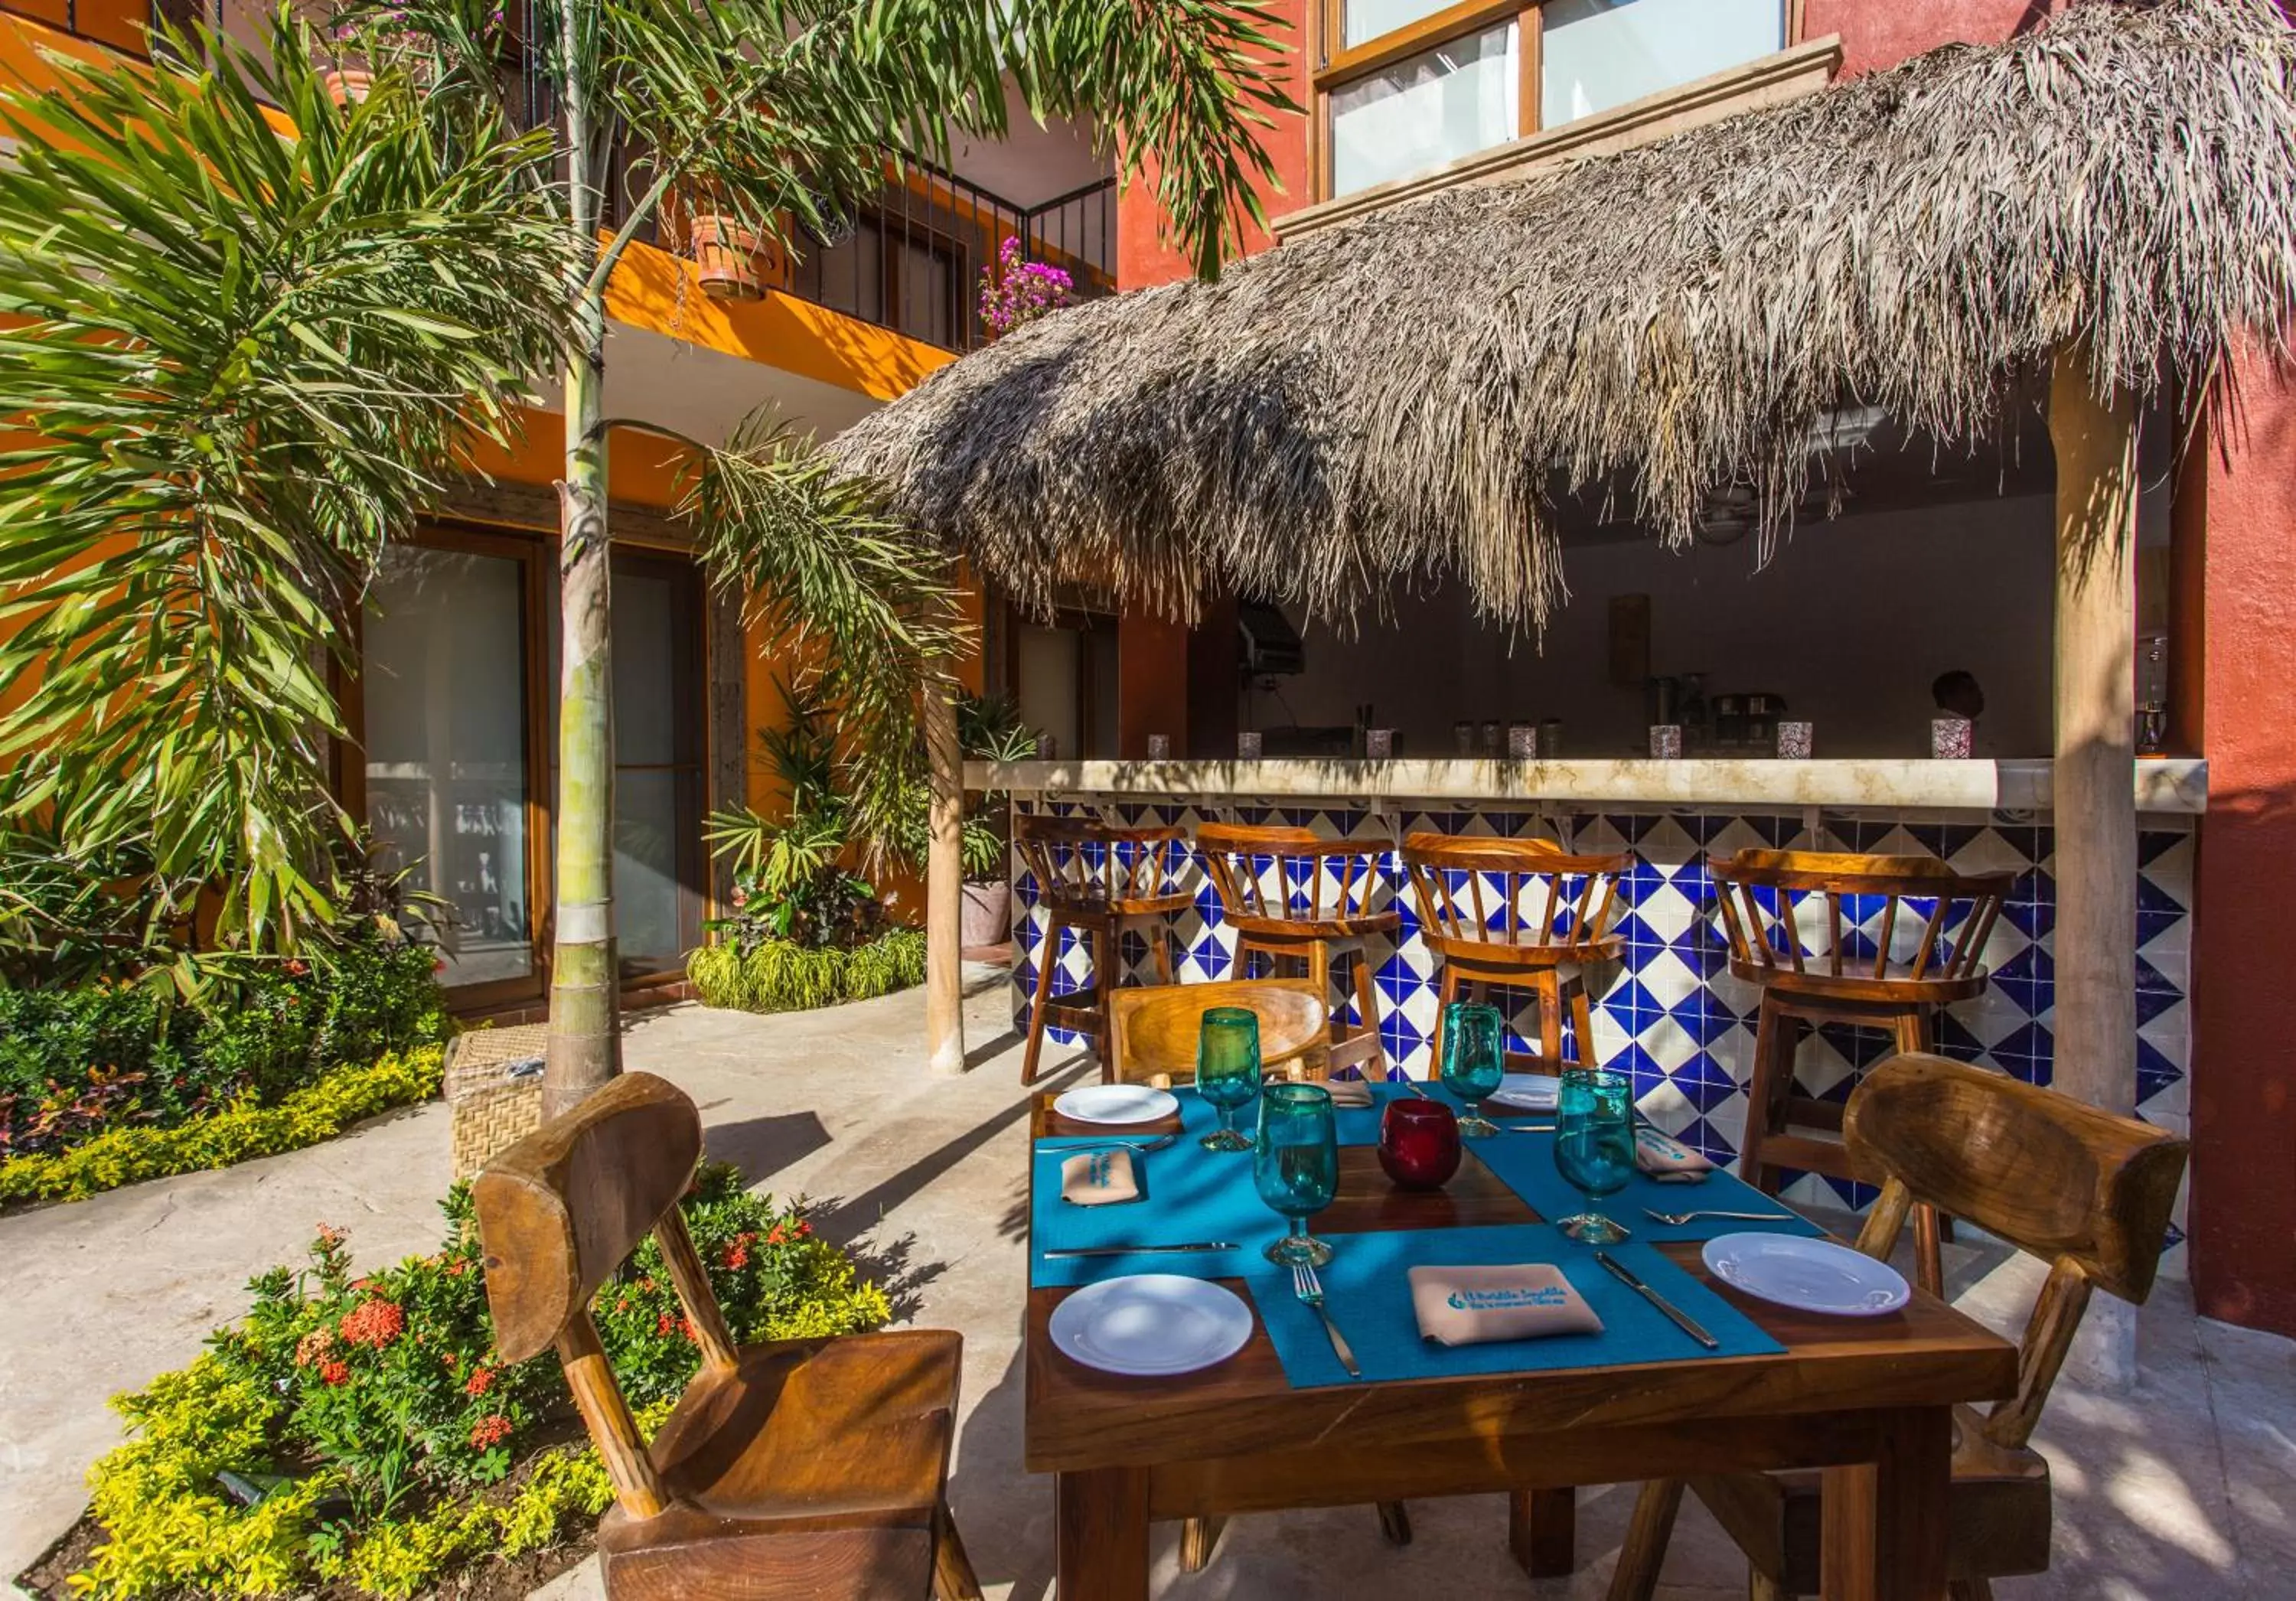 Restaurant/places to eat, Lounge/Bar in El Pueblito de Sayulita